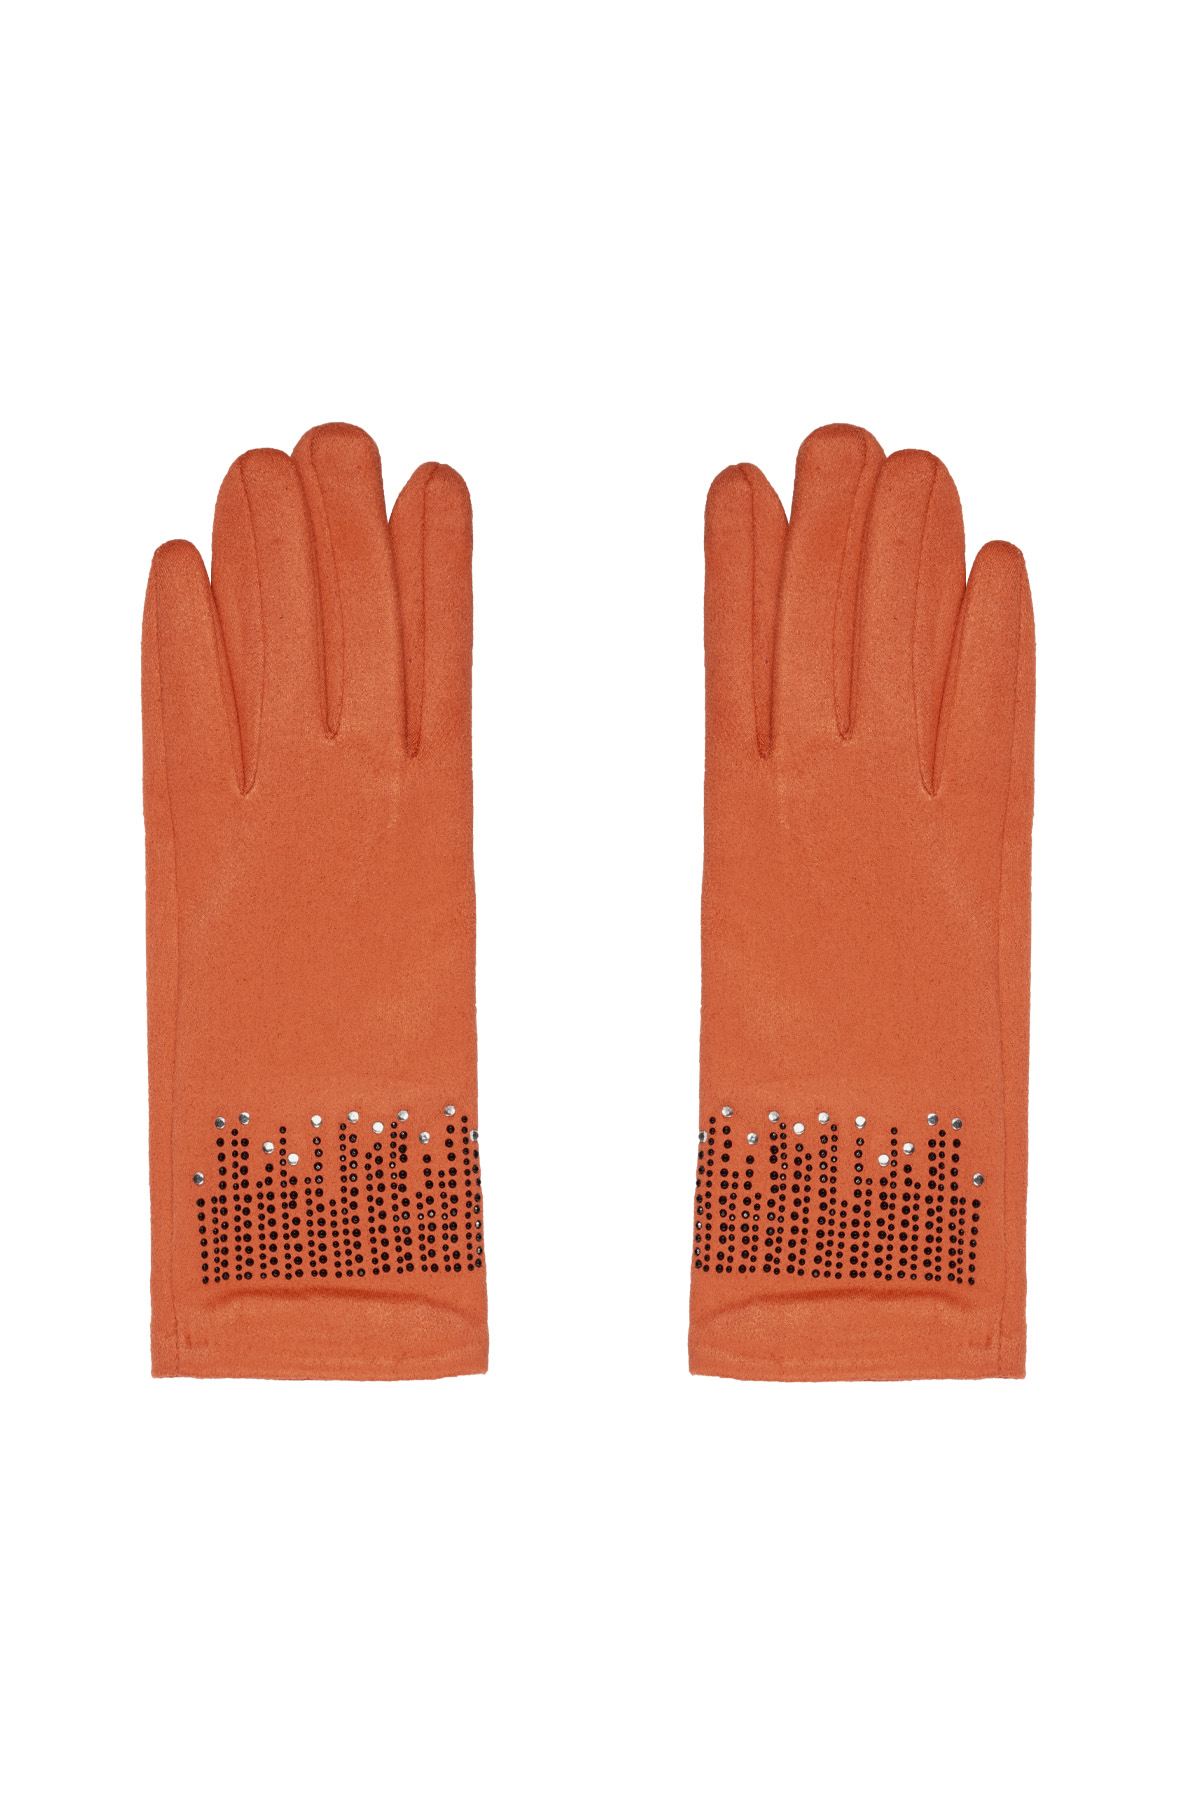 Gloves stones - orange